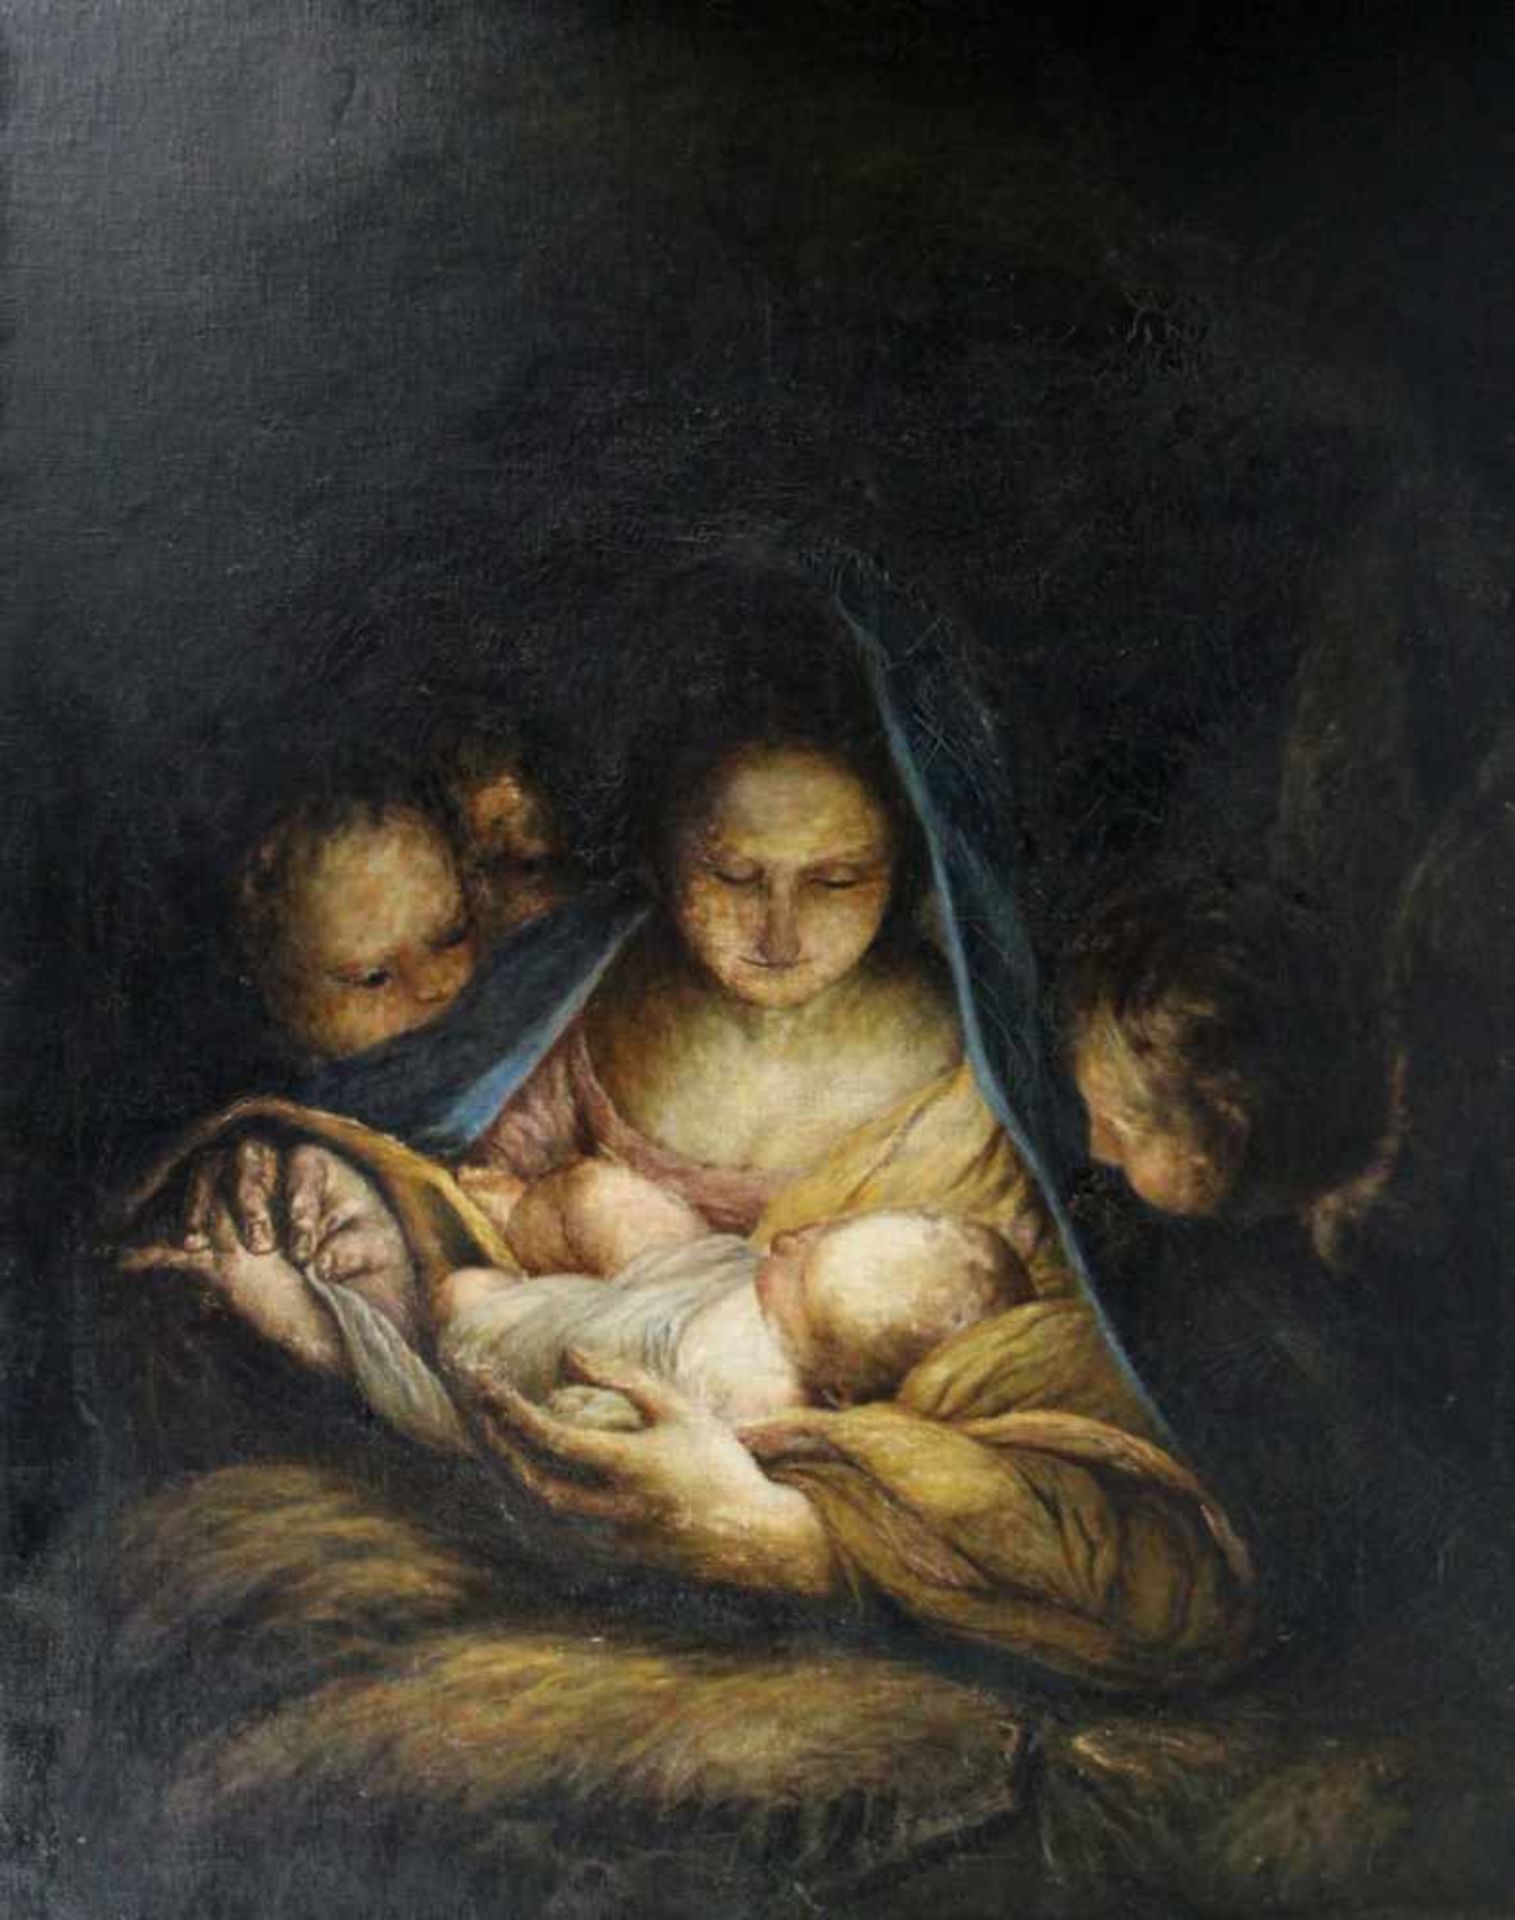 Maratta, Carlo. (1625-1713): Die Heilige Nacht. Kopie nach dem Gemälde. Öl auf Leinwand über